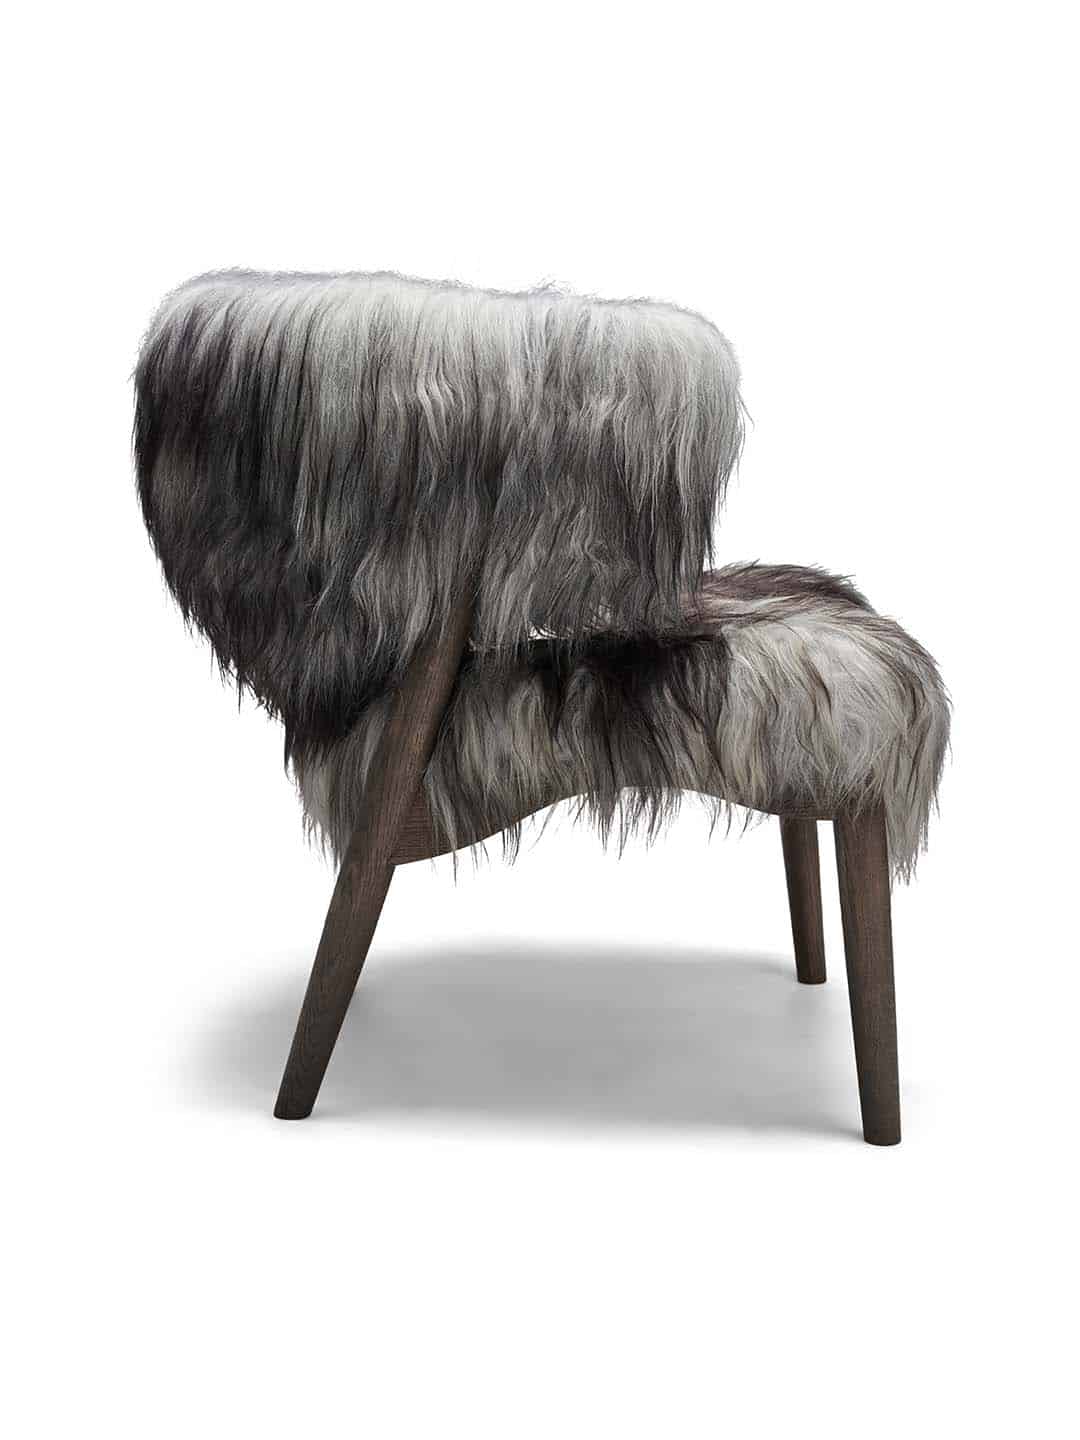 Кресло для отдыха Sibast №7 с обивкой премиум класса из овечьей шерсти